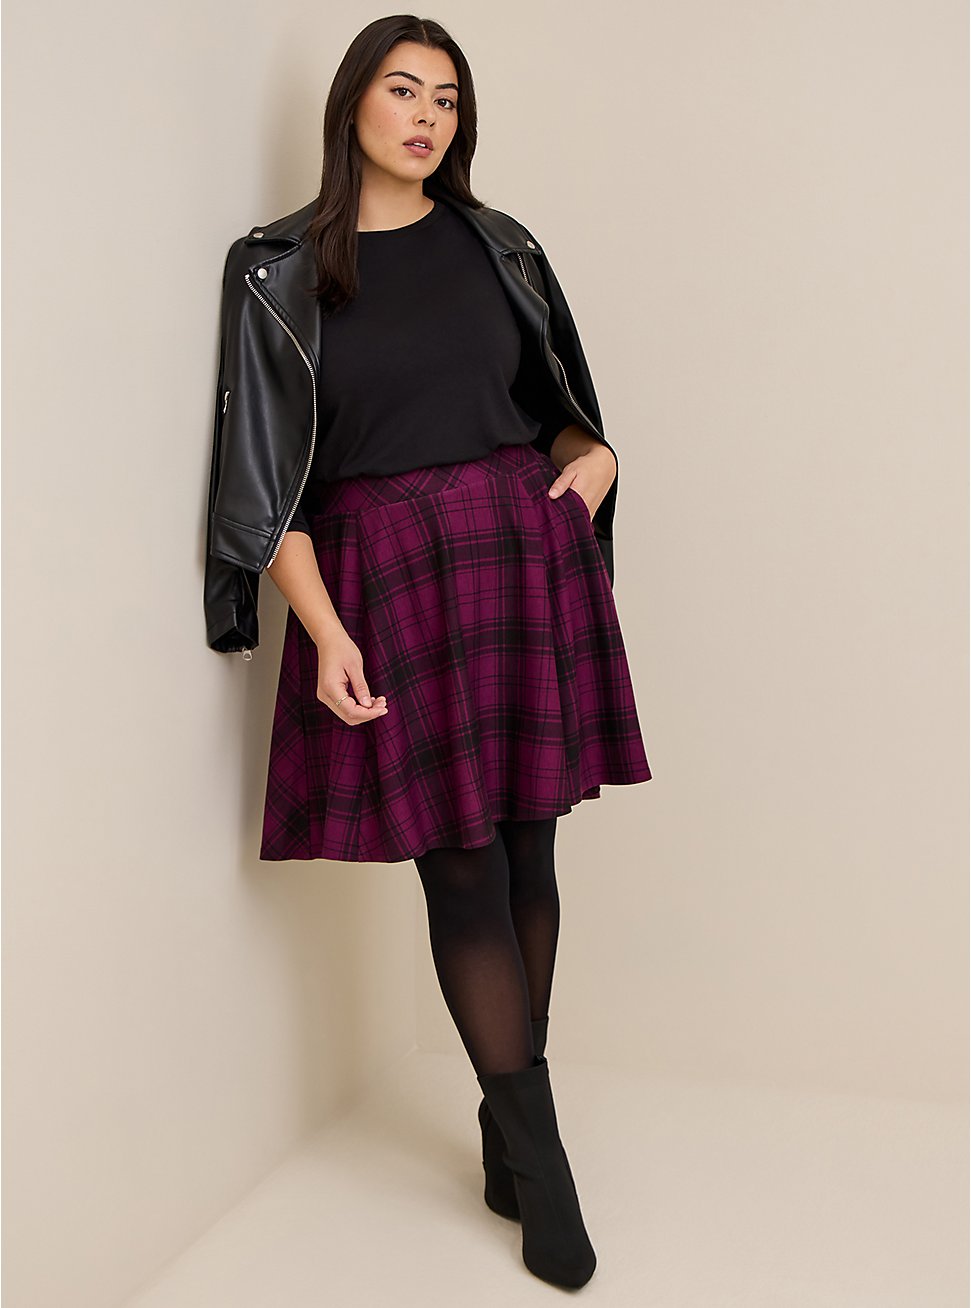 Mini A-Line Skirt For Apple Shape By torrid.com